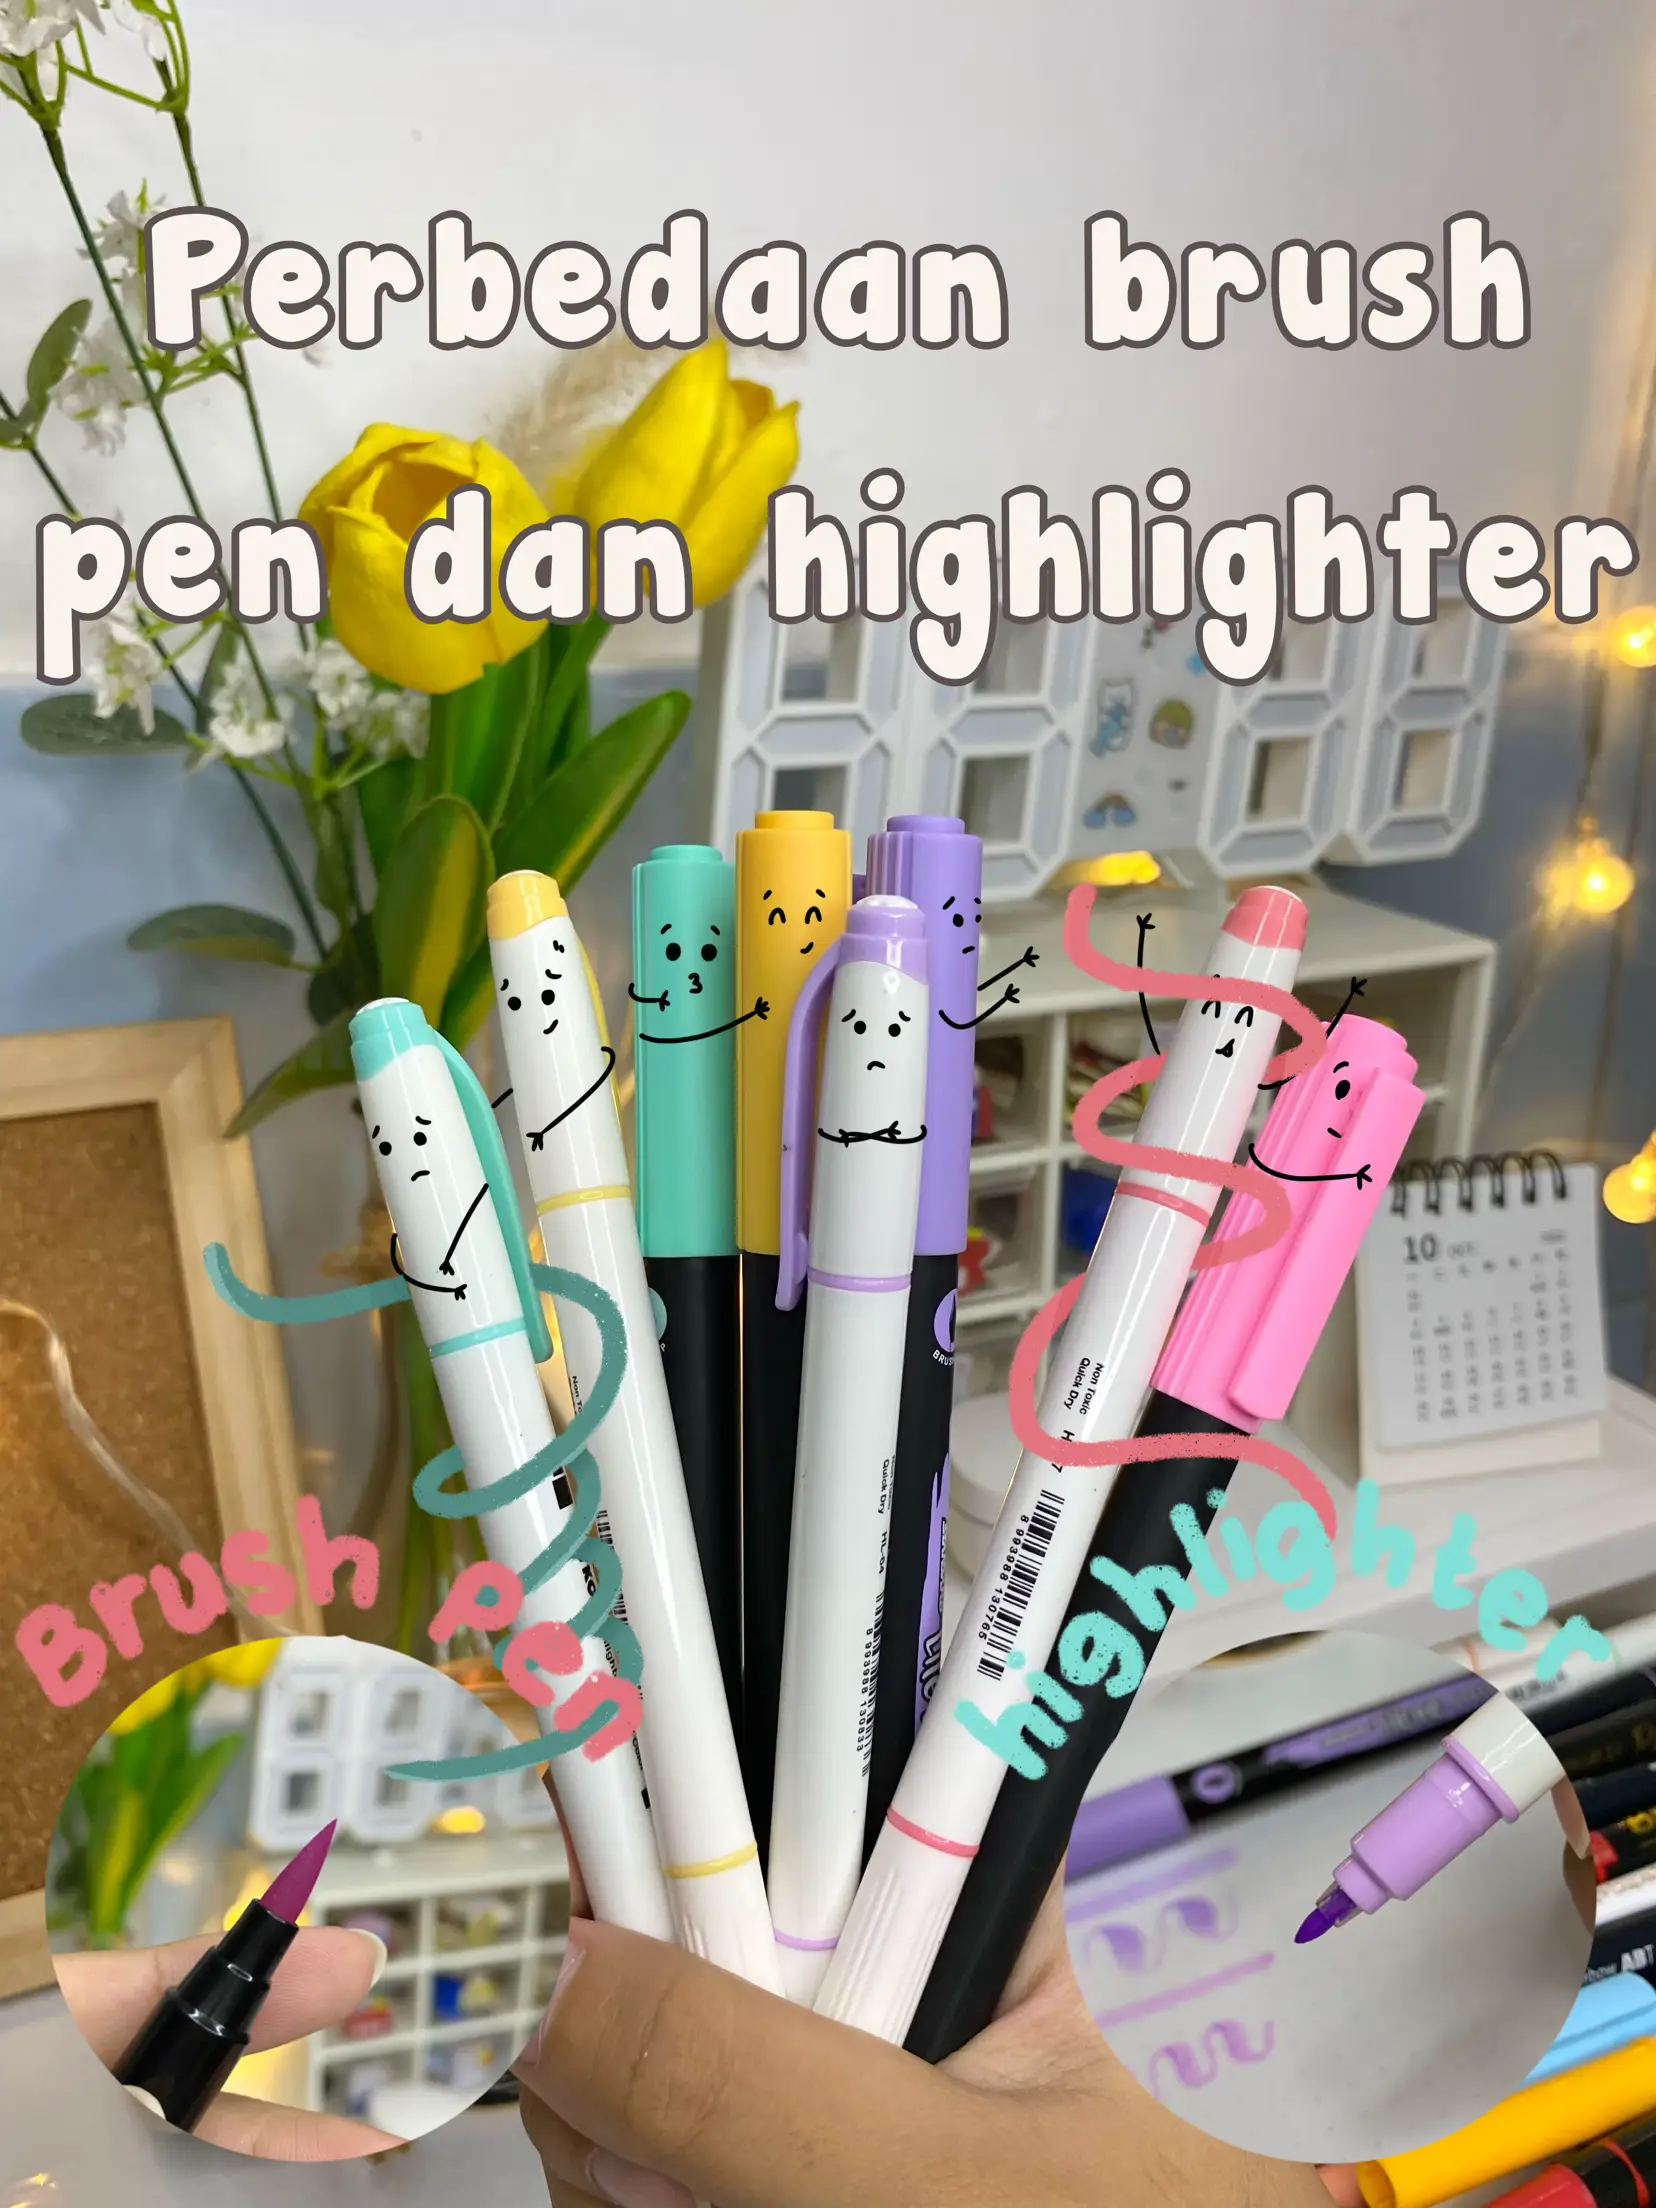 Perbedaan Brush Pen dan Highlighter 🤩, Gallery posted by Le studies